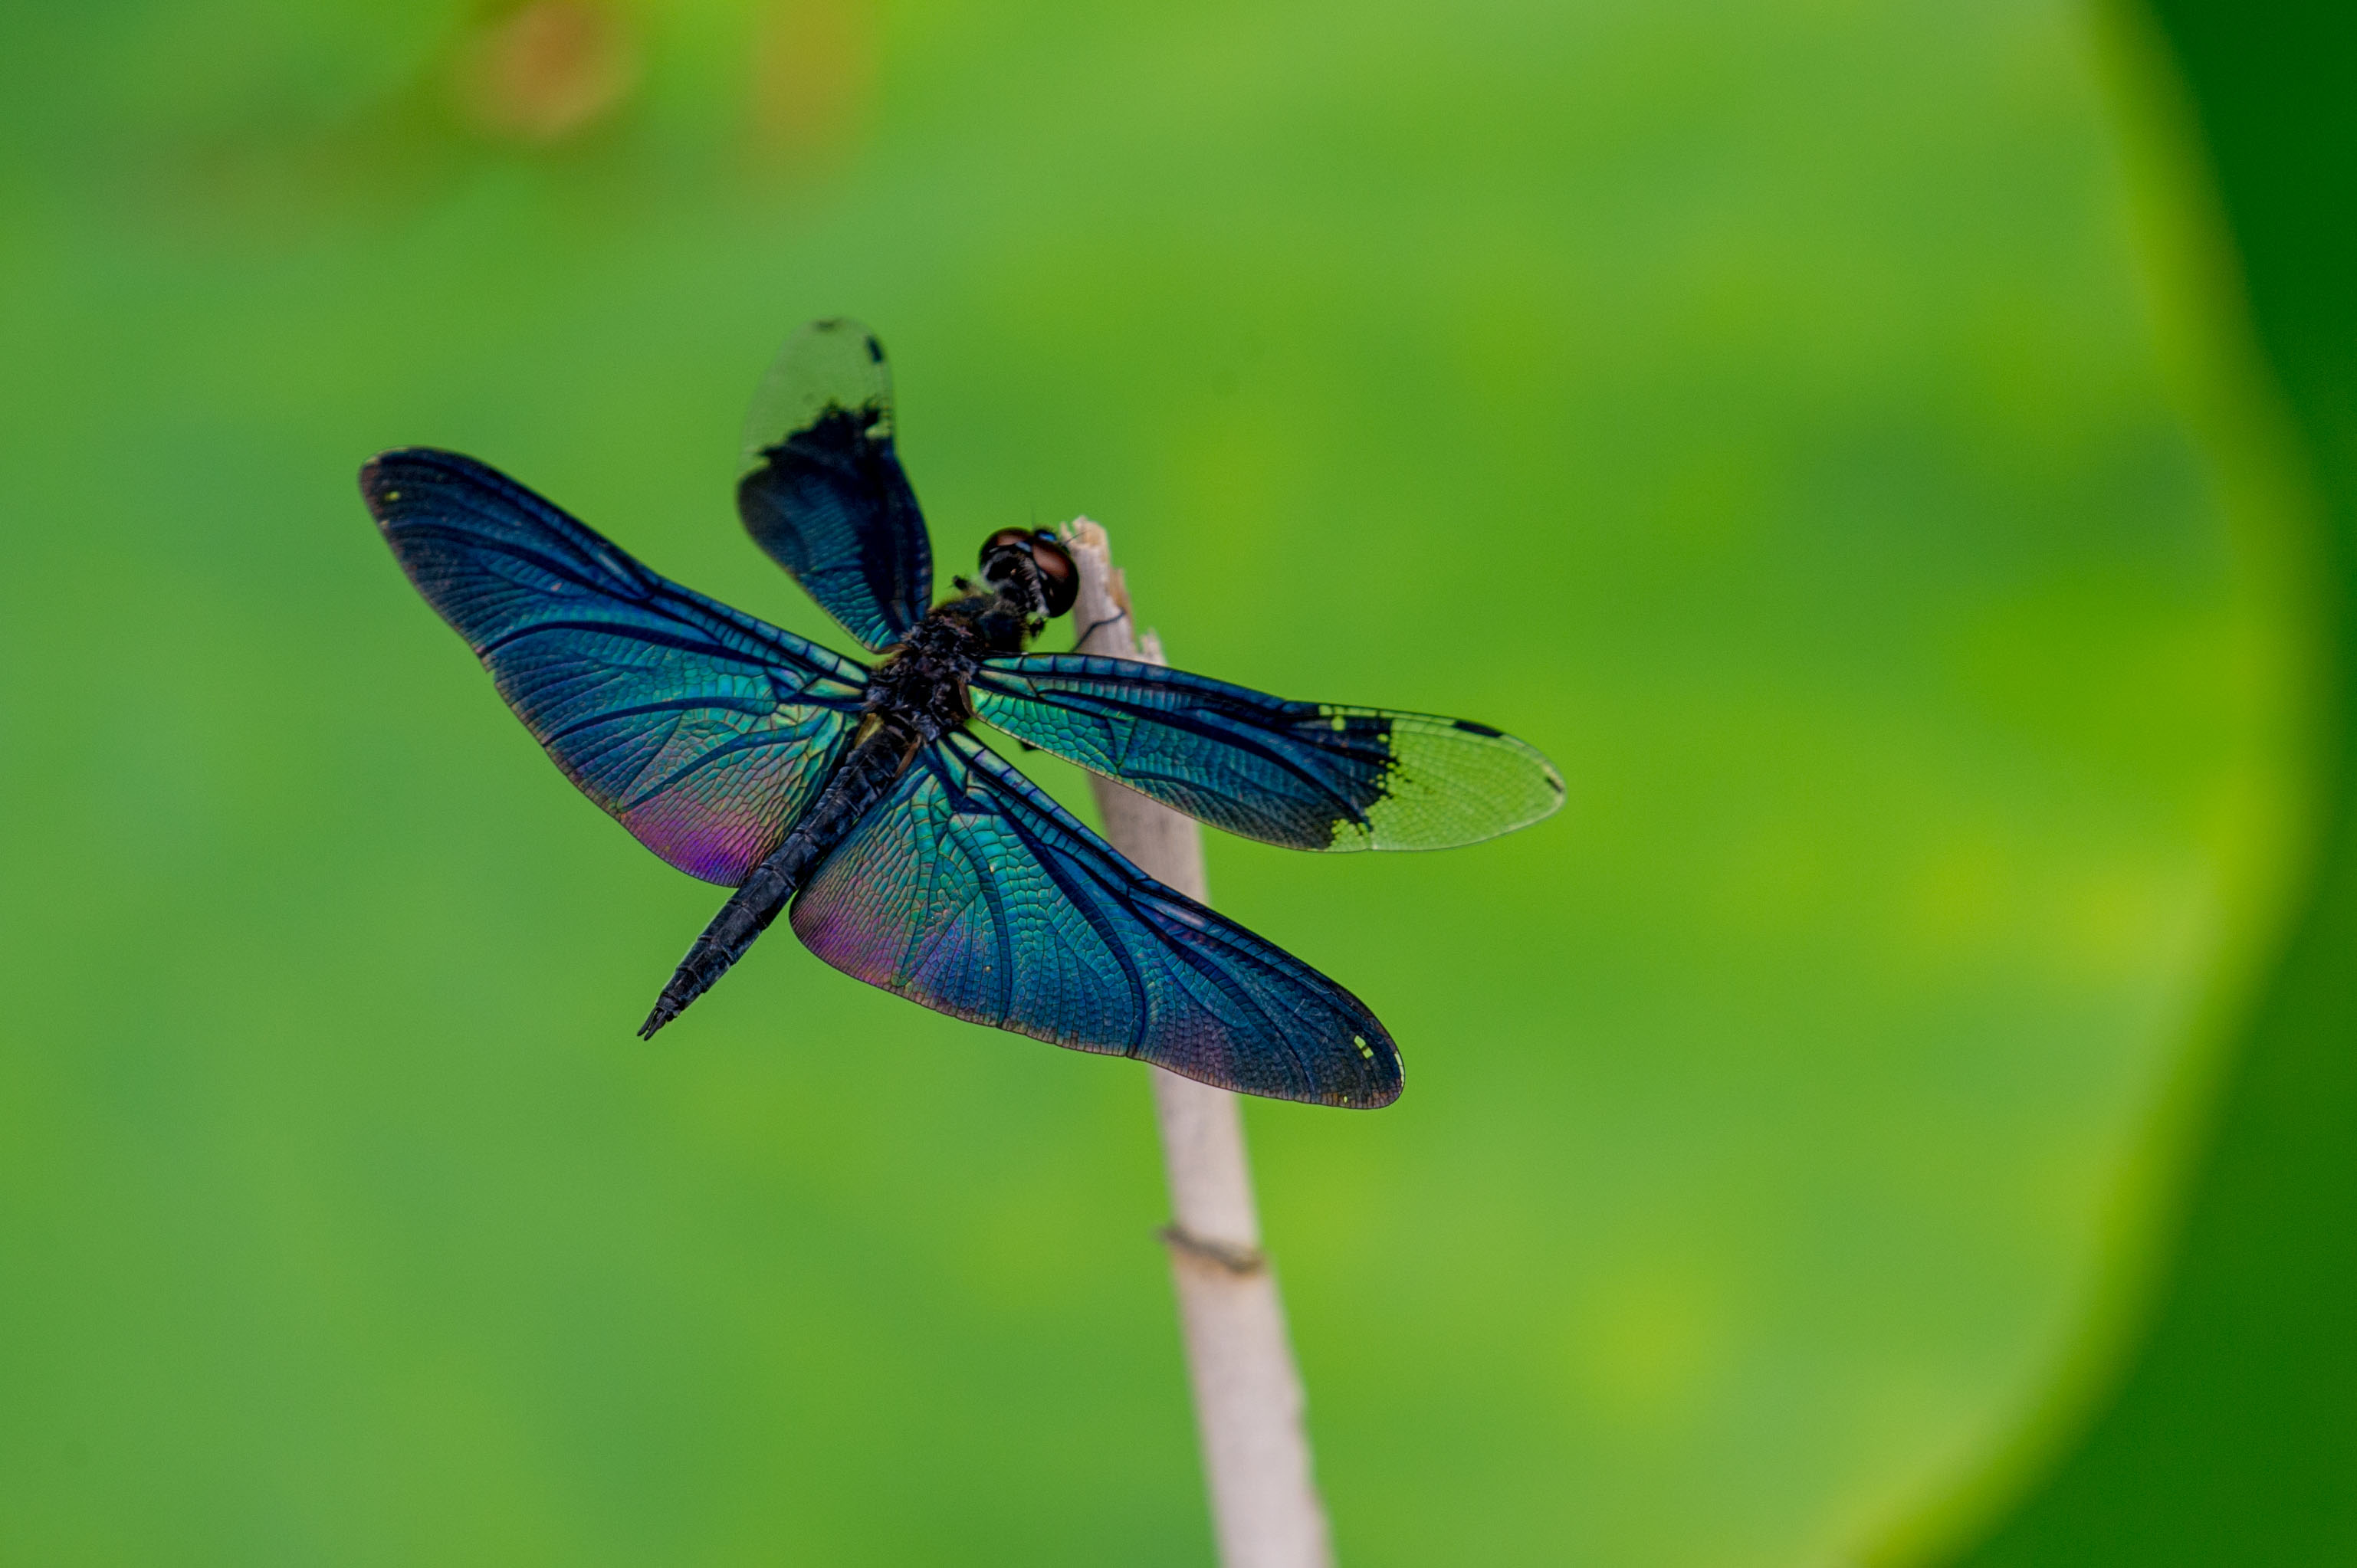 チョウトンボ 輝く羽を持つトンボ 虫の写真と生態なら昆虫写真図鑑 ムシミル